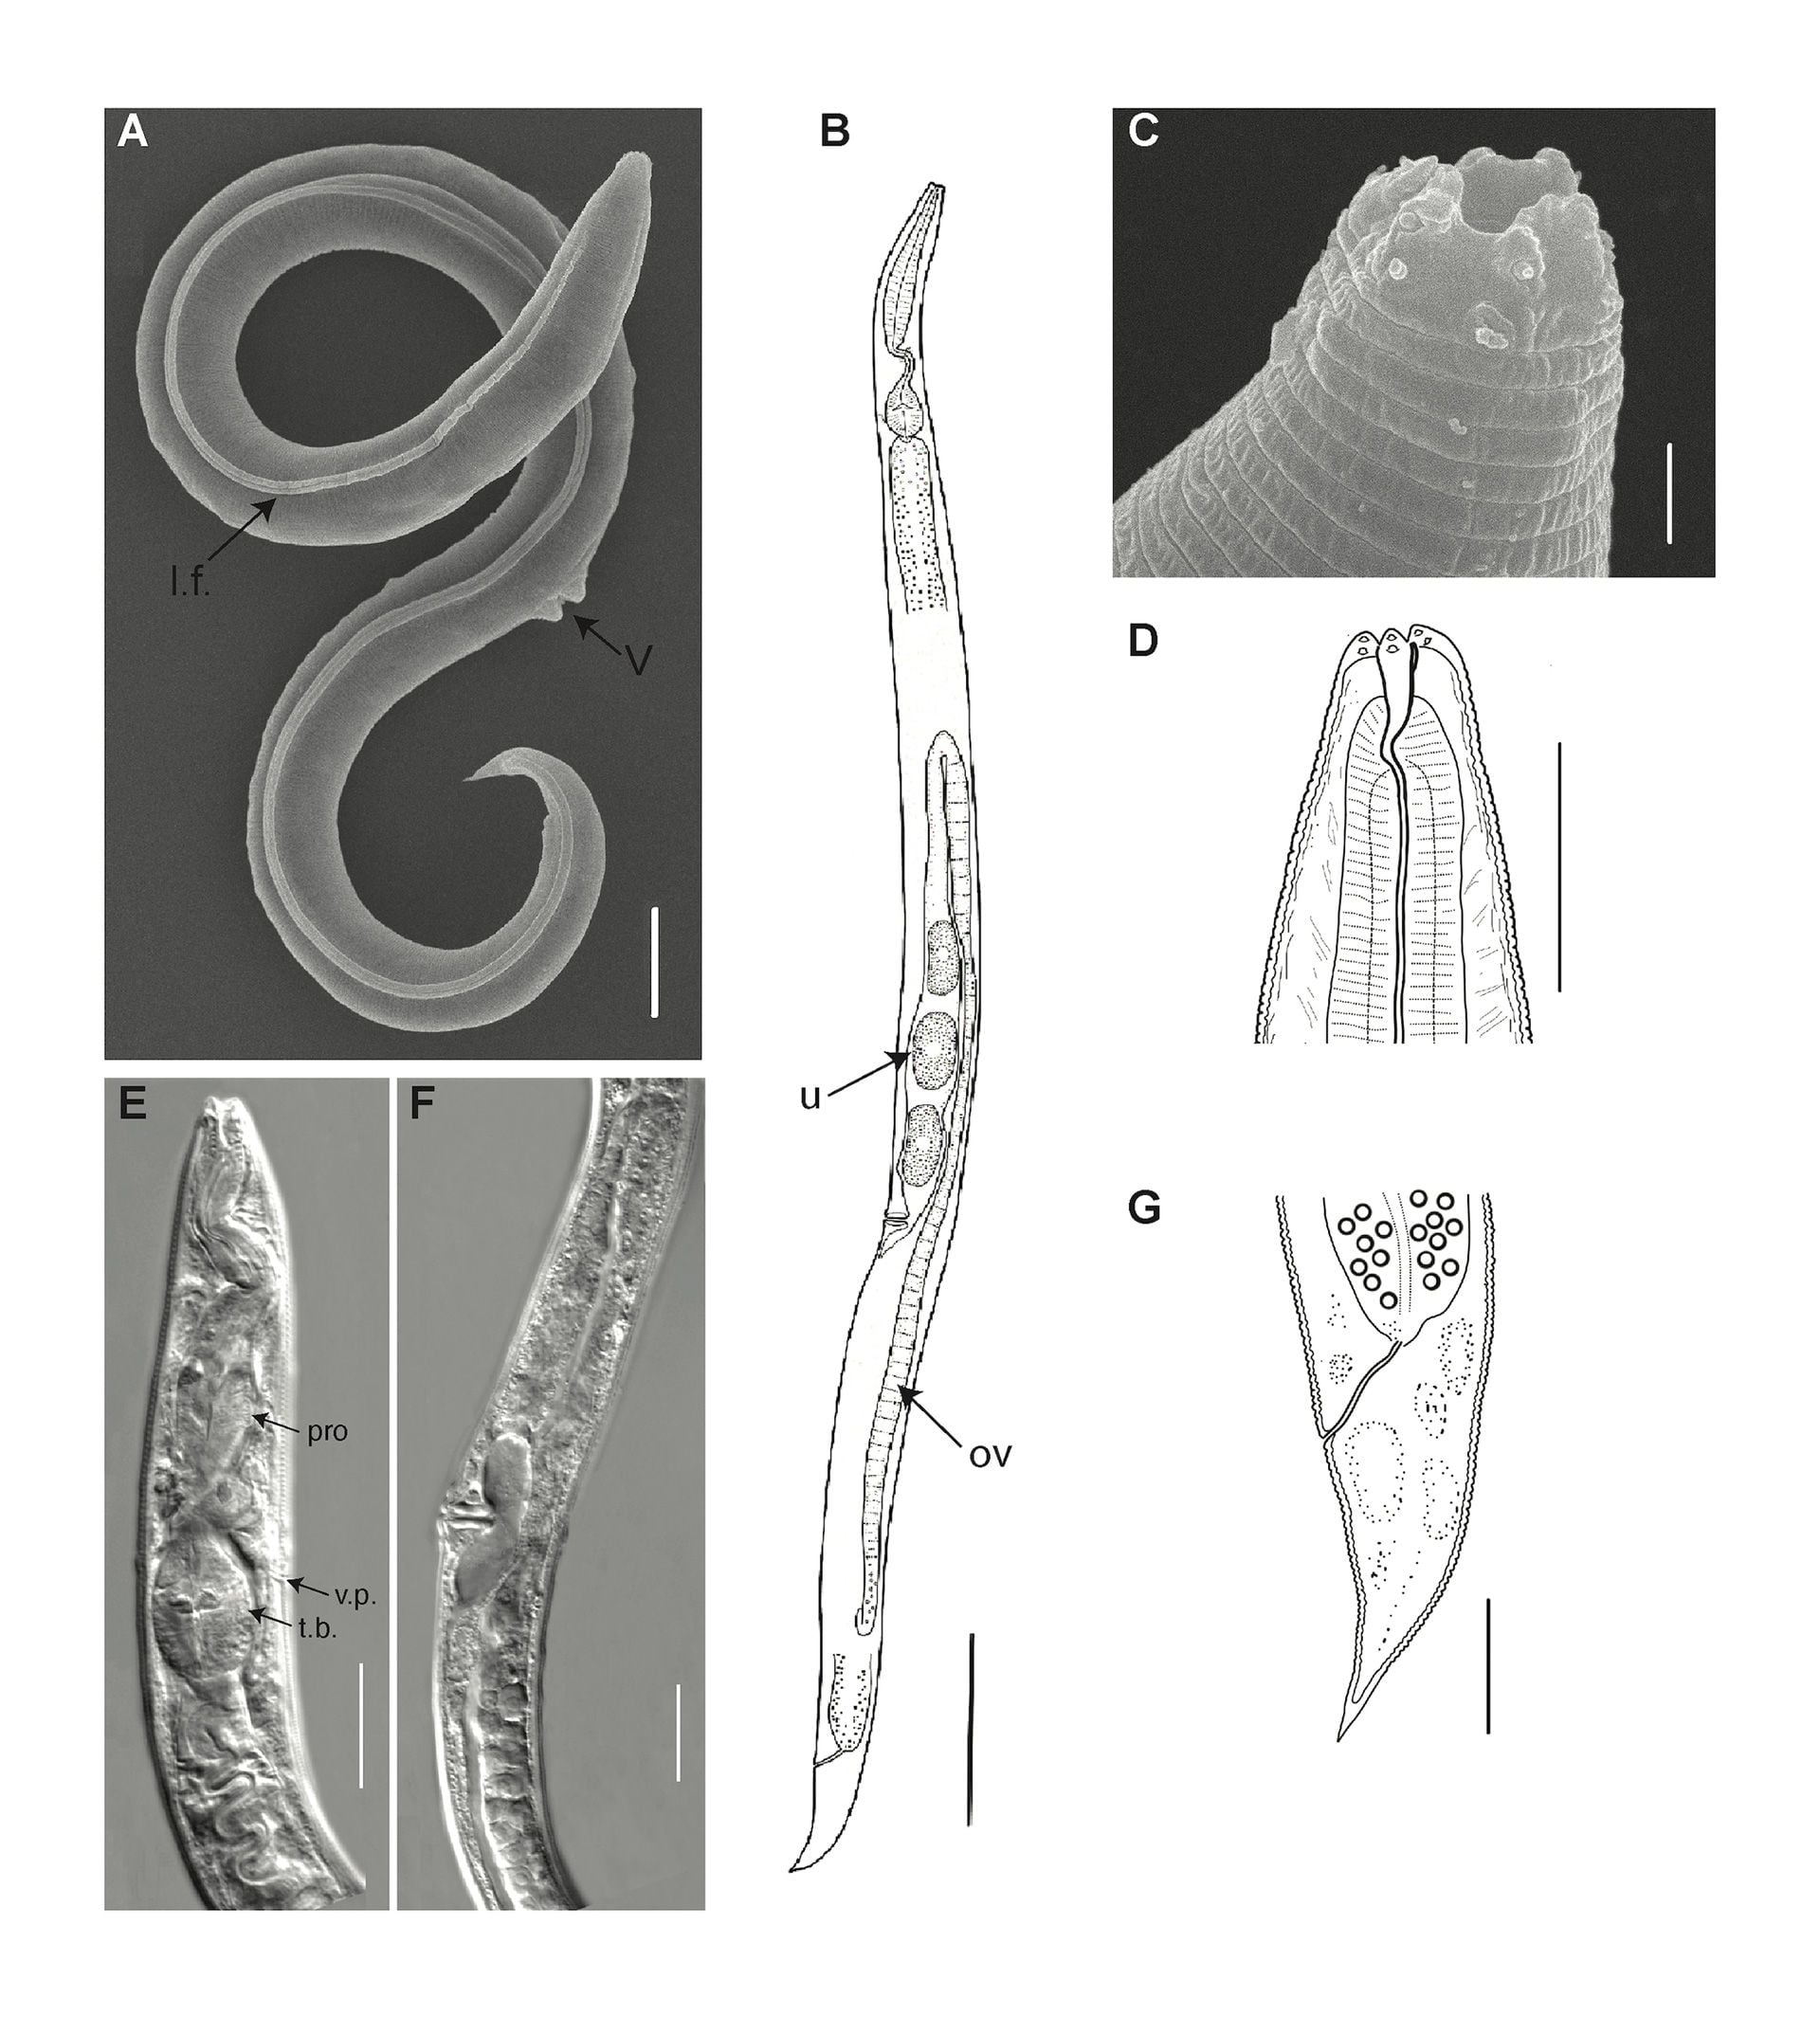 Imágenes electrónicas de barrido (A, C), fotografías de microscopía óptica (E, F) y presentaciones gráficas (B, D, G) del holotipo: A, B) cuerpo entero, C, D) extremos anteriores, E) cuerpo anterior, F) región del cuerpo perivulvar, G) cola. (Foto de PLoS Genetics)